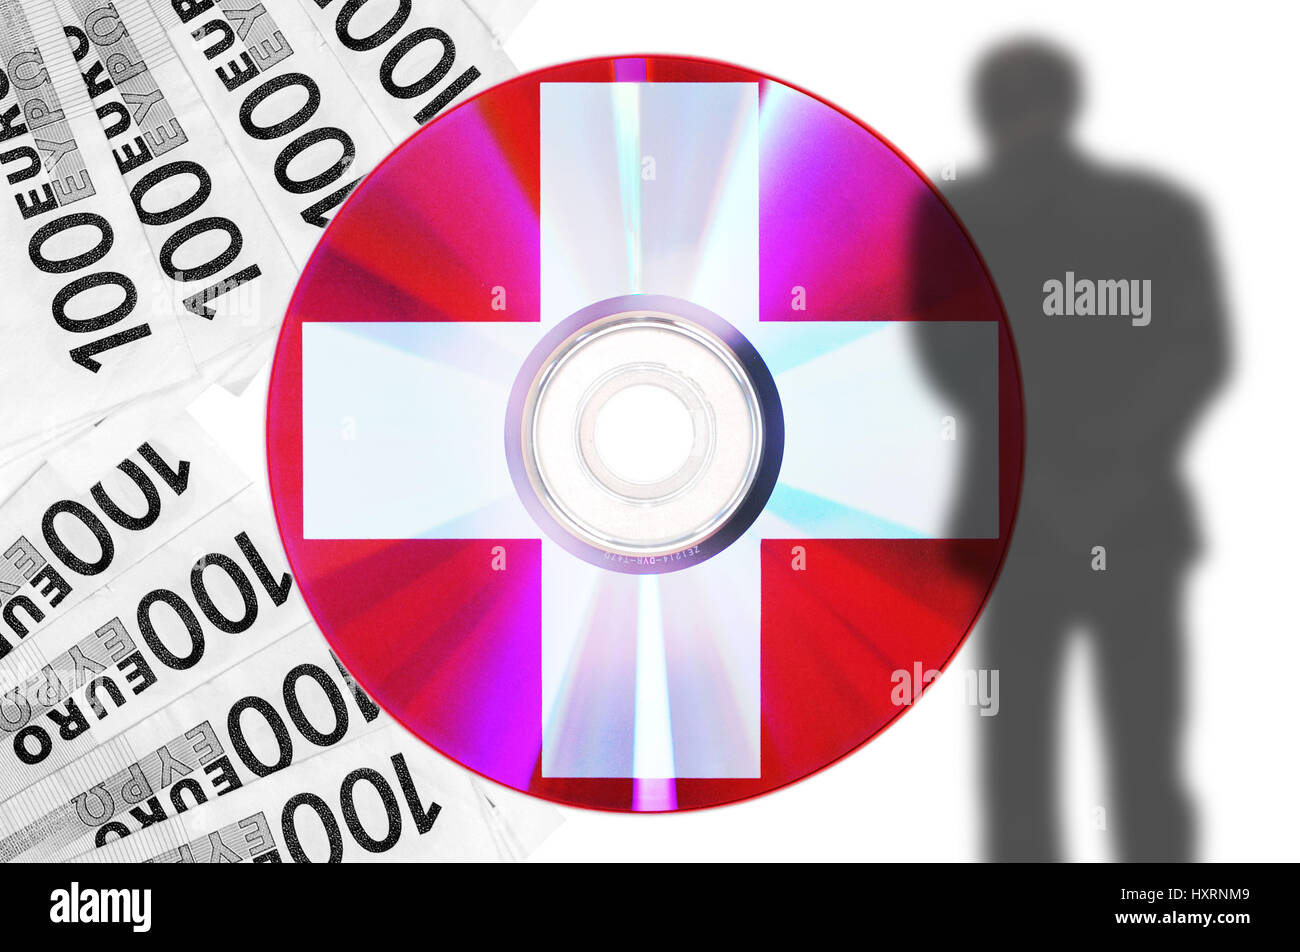 CD with Swiss bank data, shades of a businessman and black money, CD mit Schweizer Bankdaten, Schatten eines Geschäftsmannes und Schwarzgeld Stock Photo